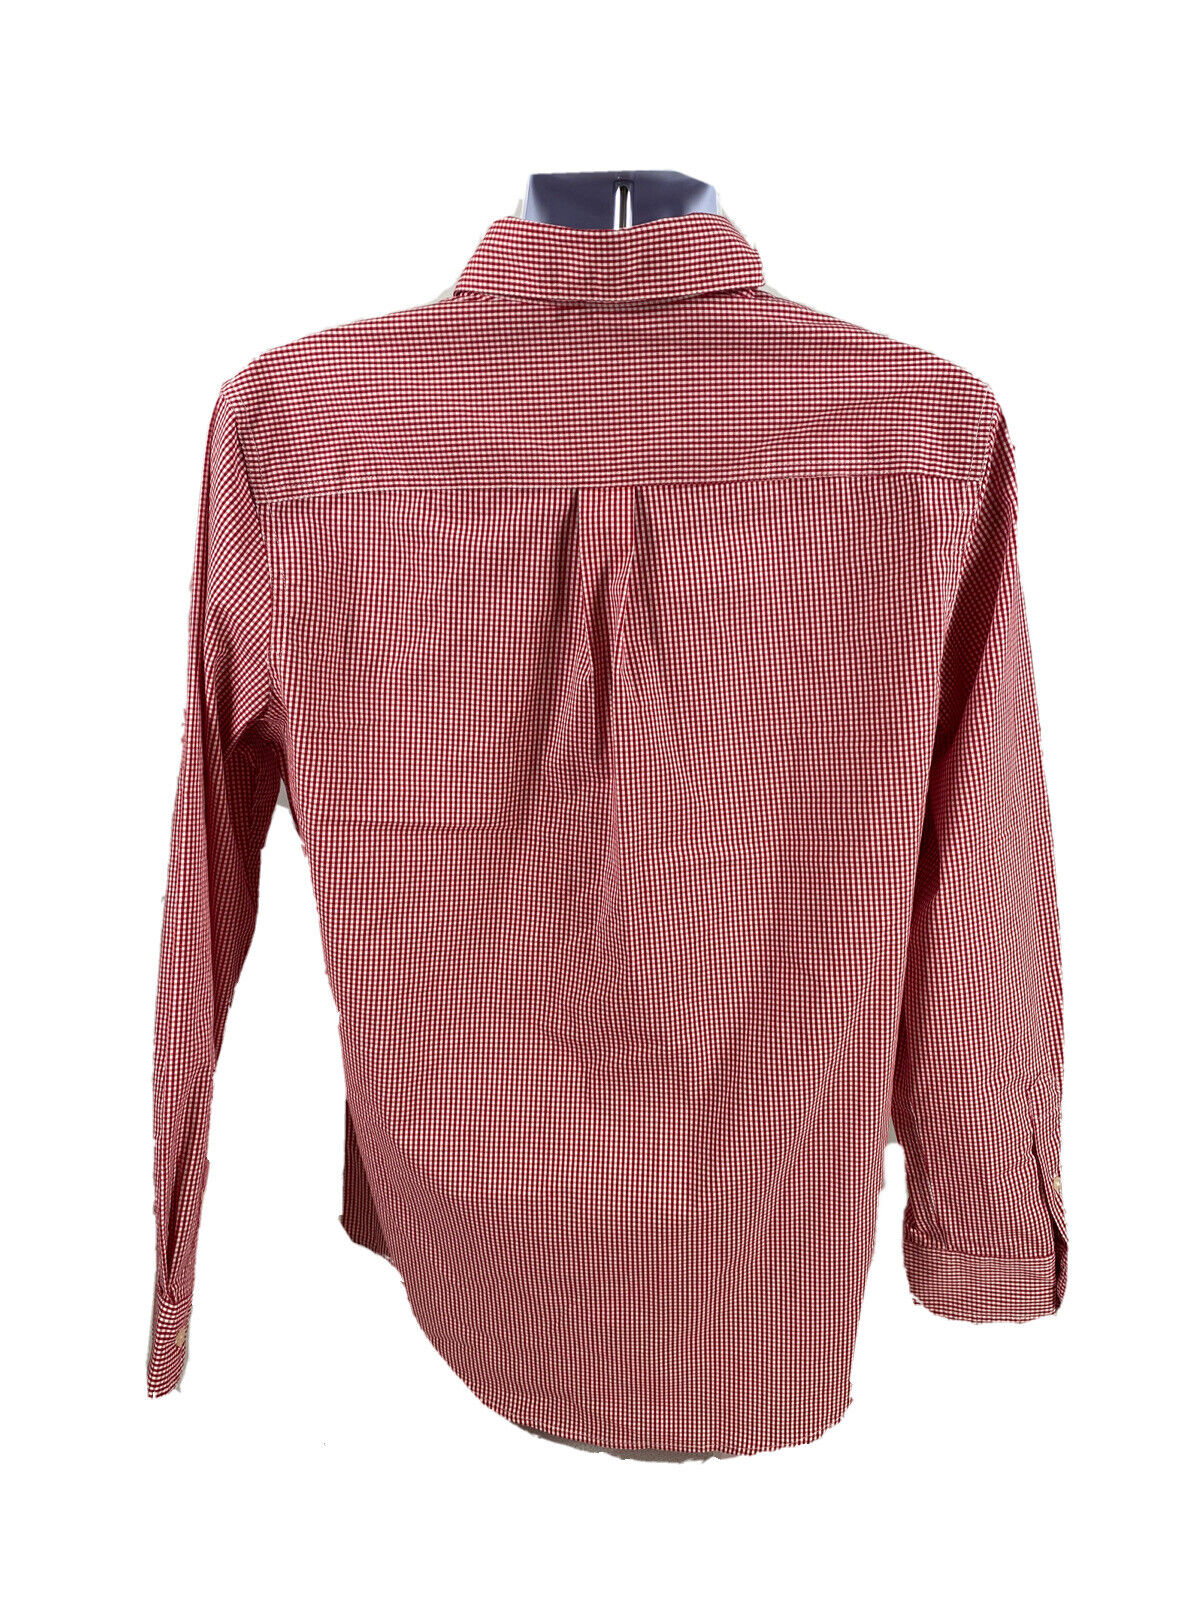 NUEVA camisa informal con botones y botones de fácil cuidado, elástica, a cuadros, roja, de Chaps para hombre - S